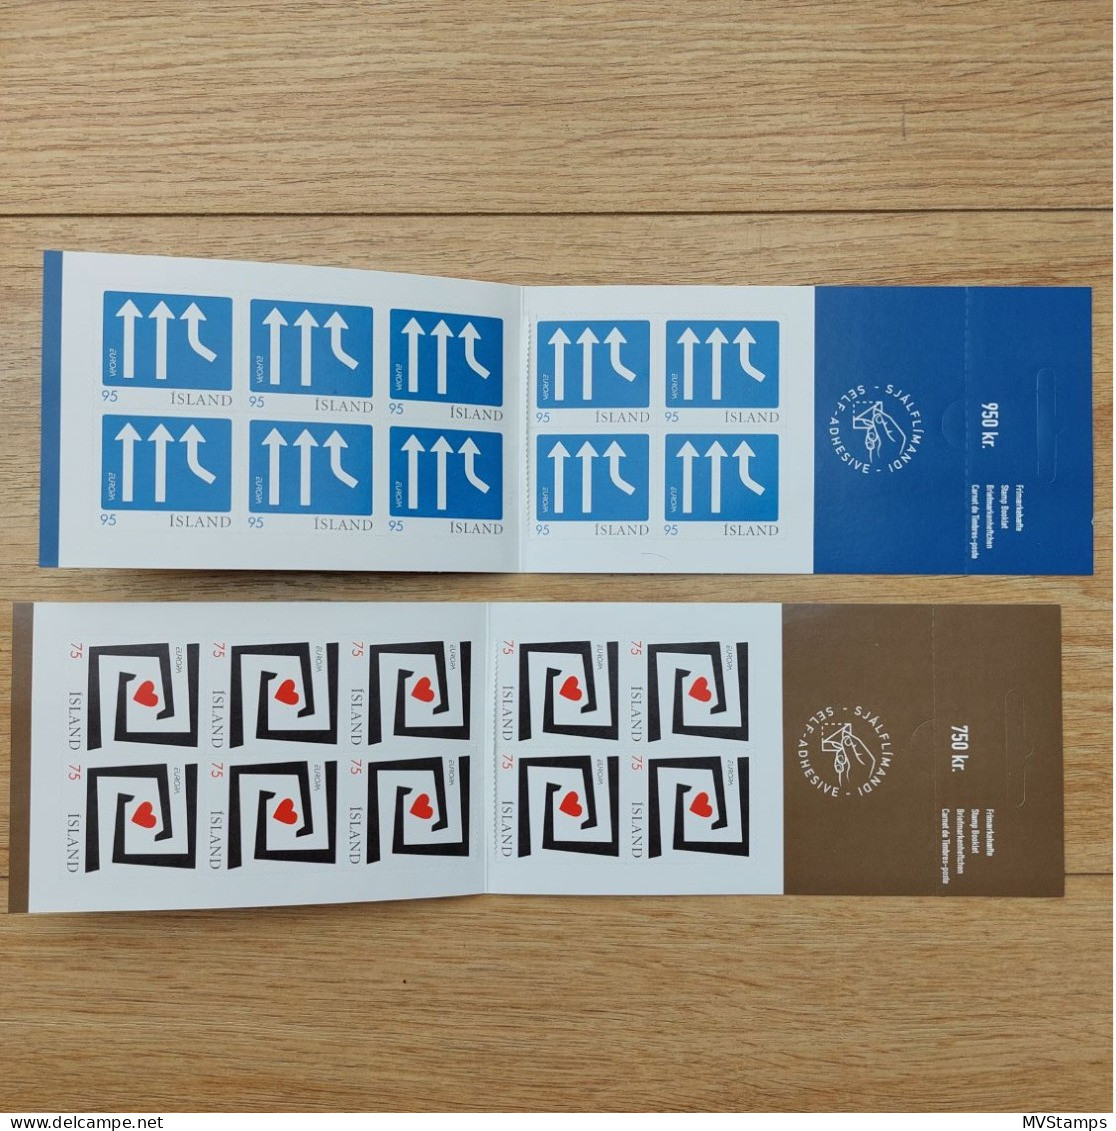 Iceland 2006 Set Stampbooklets CEPT/integration Stamps (Michel MH 1135/36) MNH - Carnets